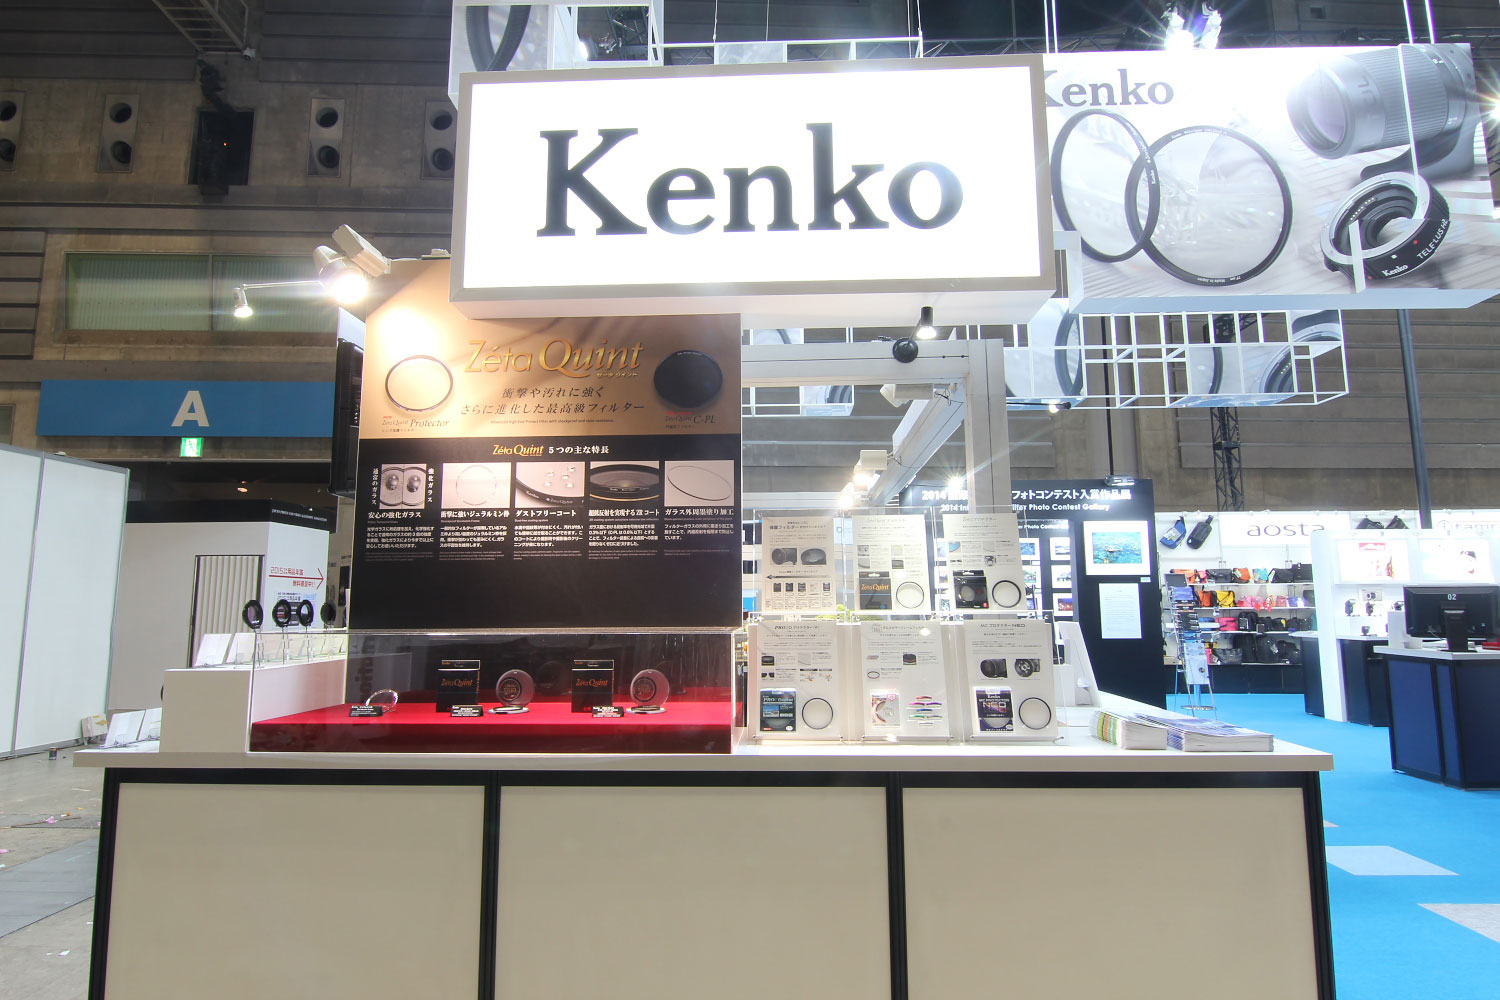 Kenko filters